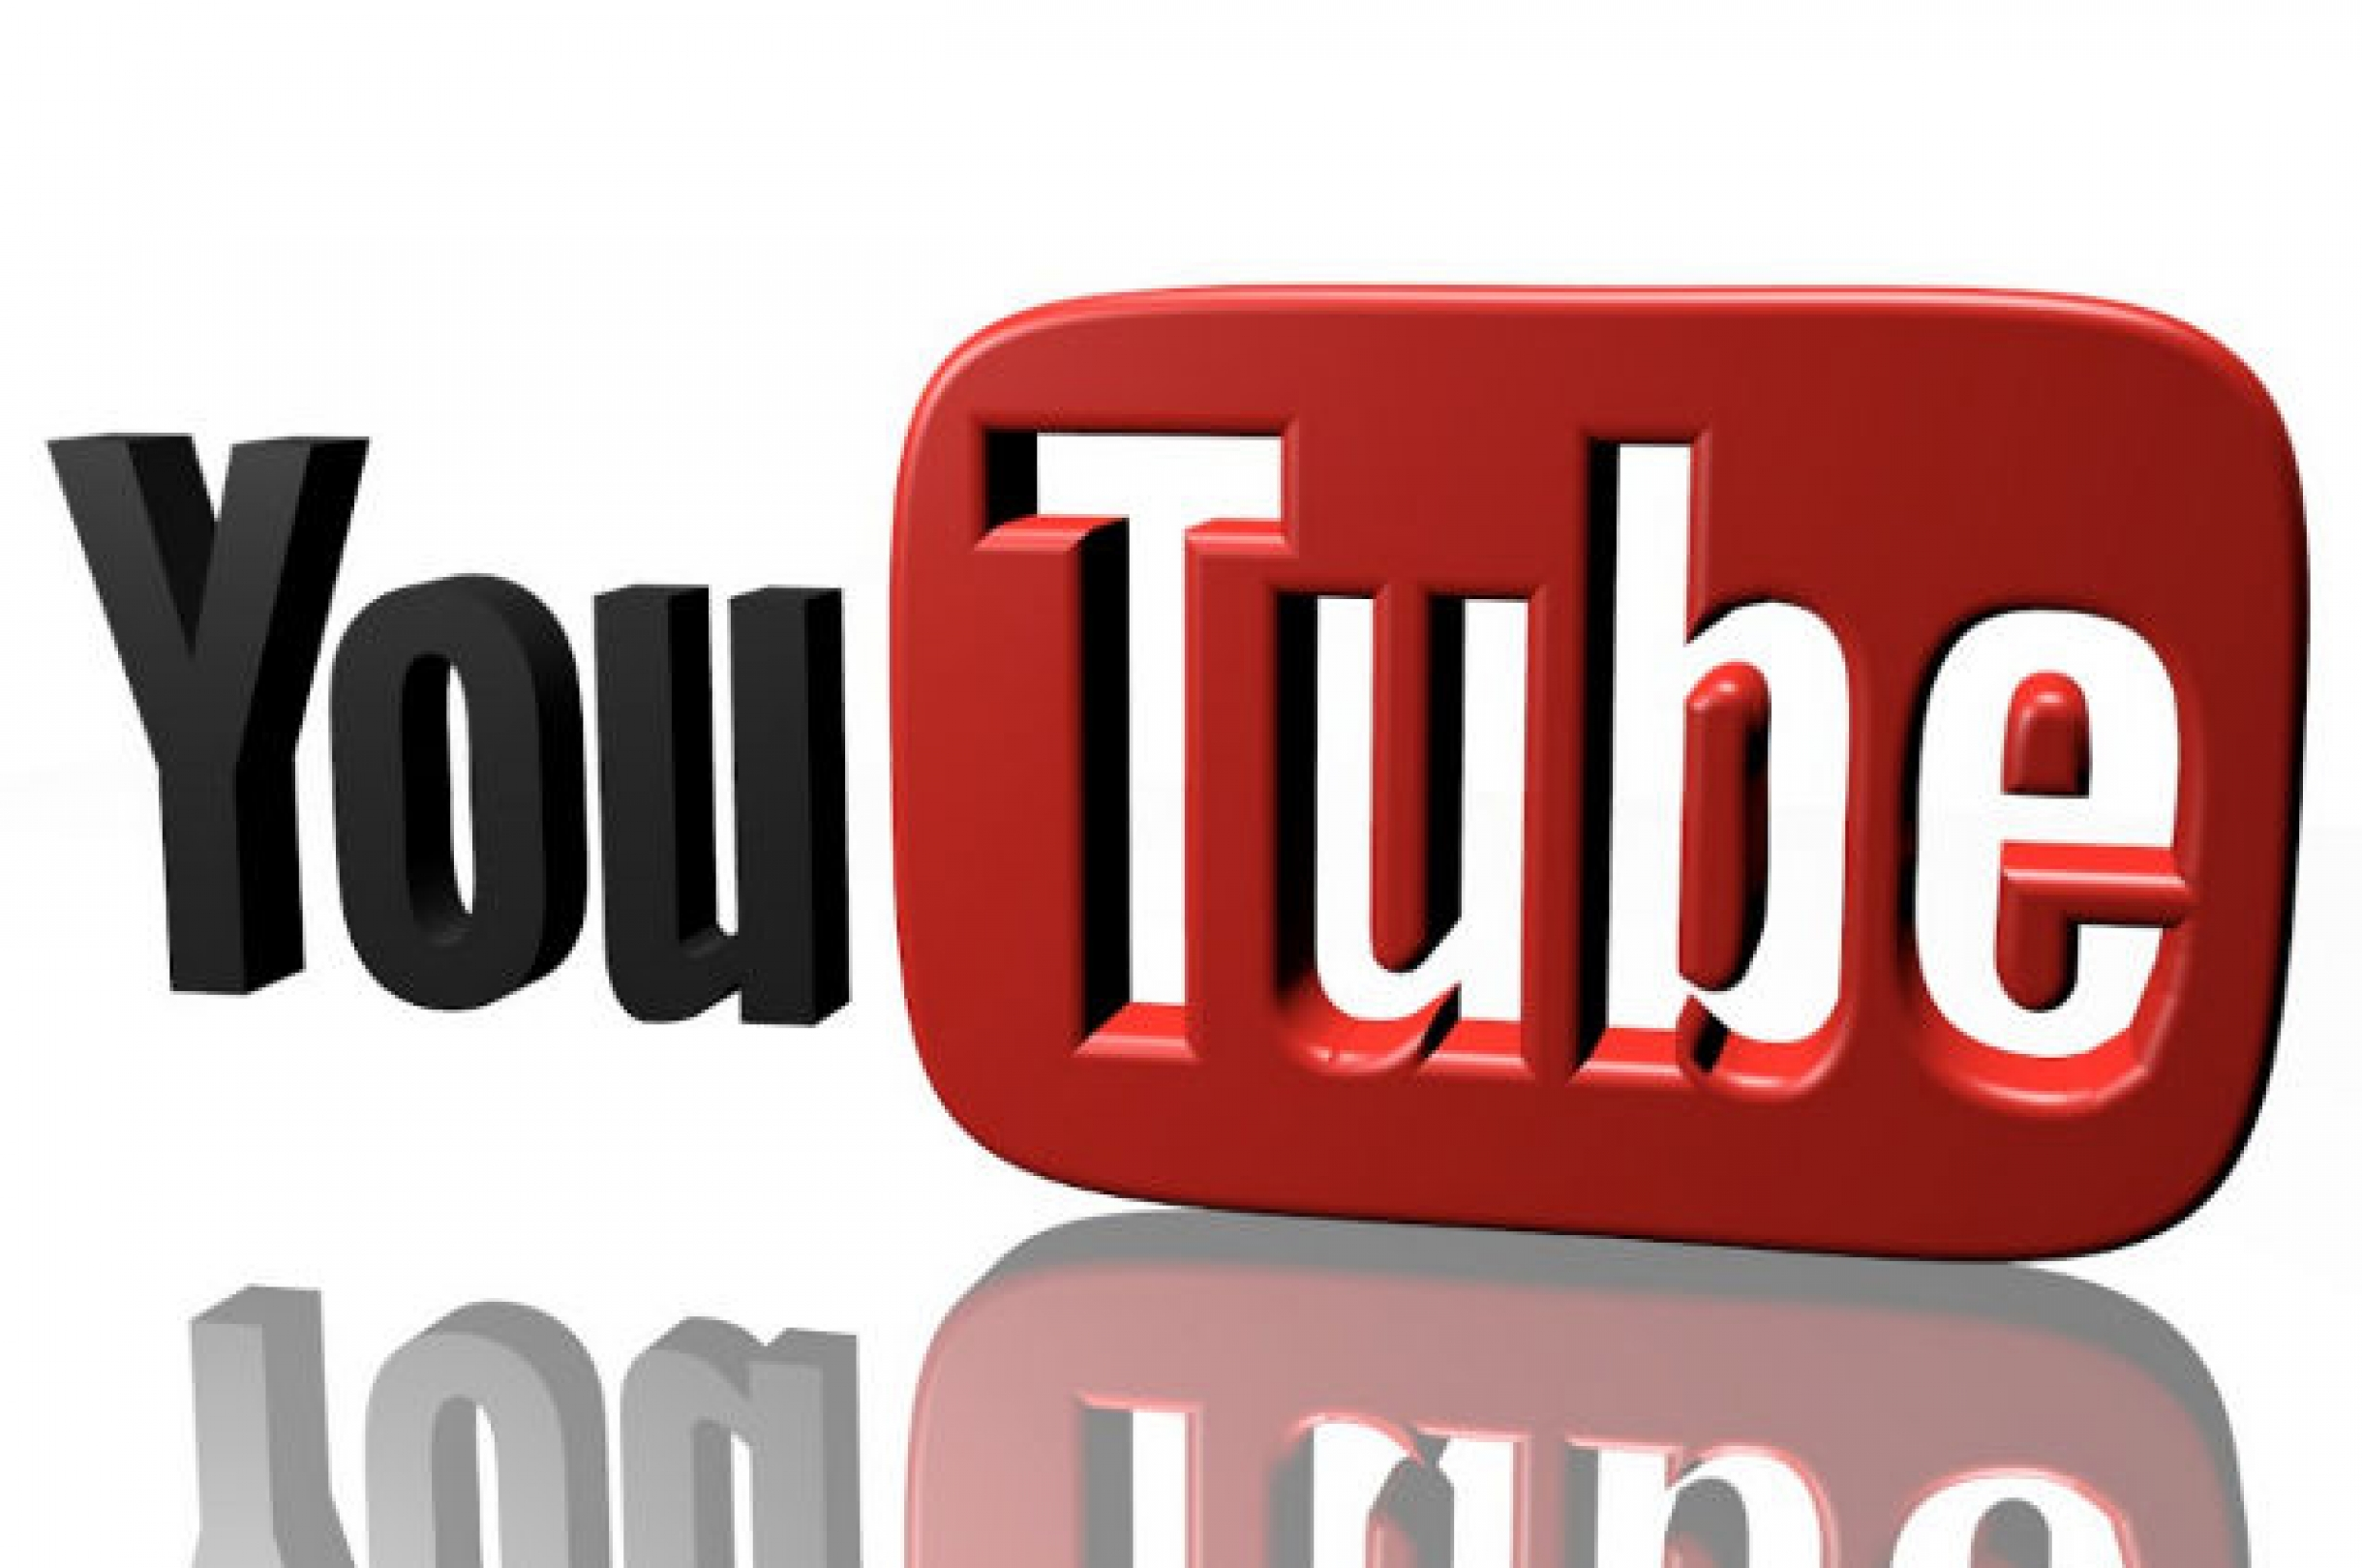 Nueva función de Youtube permite chatear y compartir videos | FRECUENCIA RO.